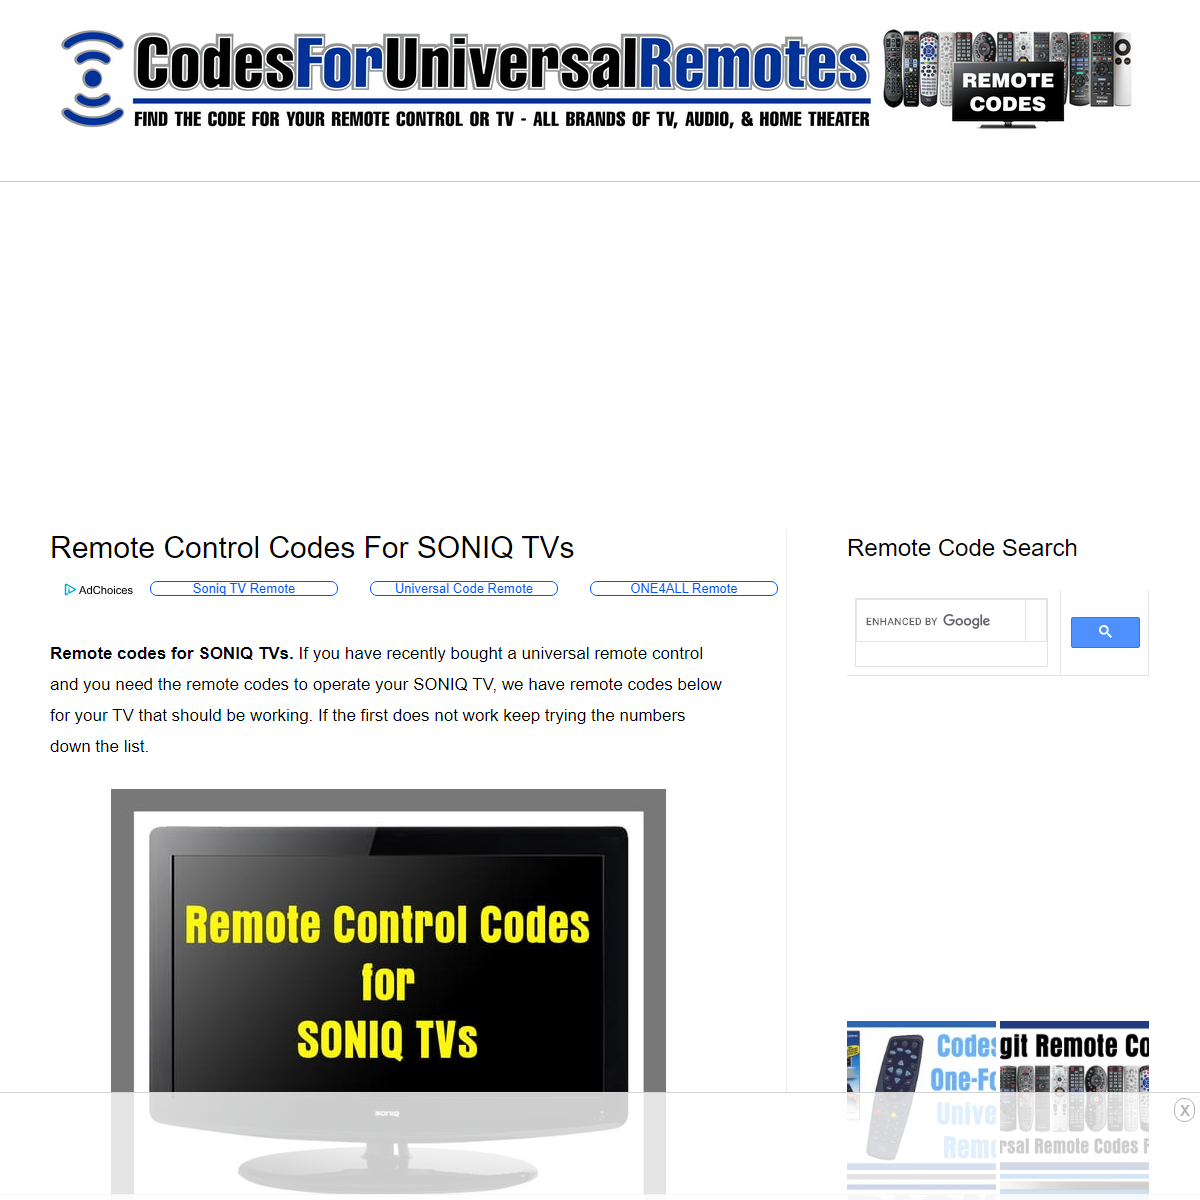 A complete backup of https://codesforuniversalremotes.com/remote-control-codes-soniq-tvs/